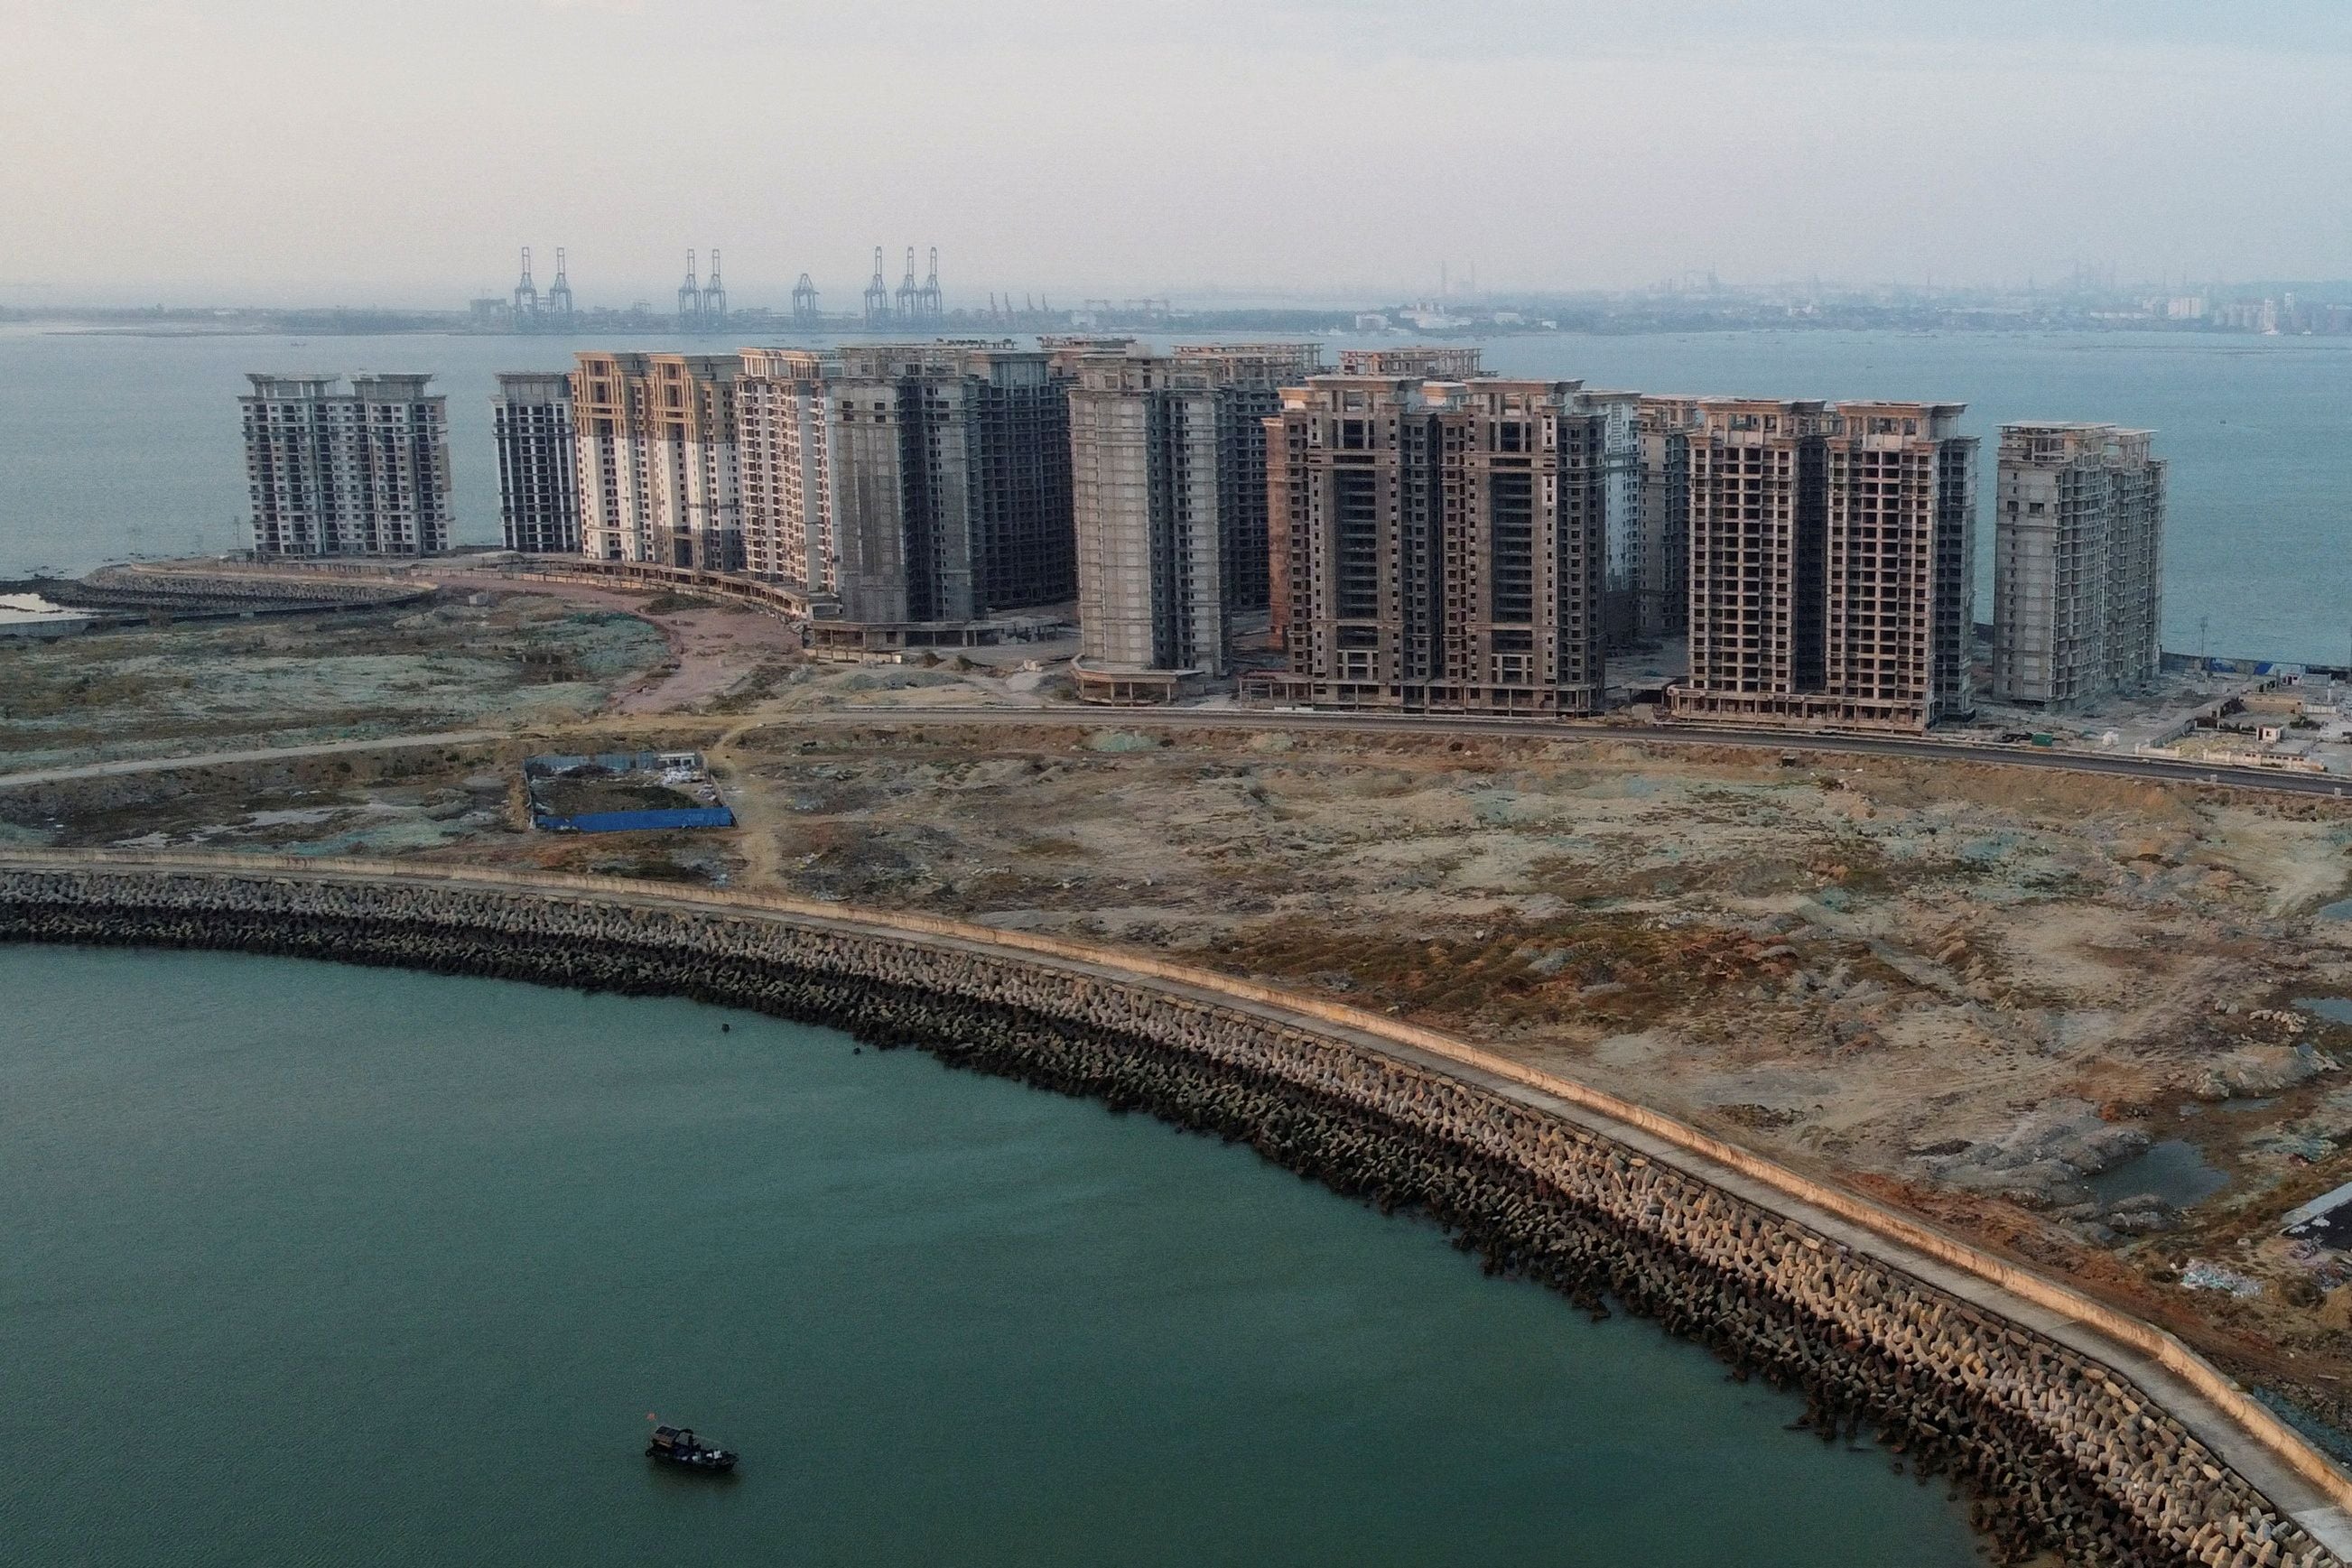 Una vista aérea muestra los 39 edificios construidos por el grupo chino Evergrande sobre los que las autoridades han emitido una orden de demolición, en la provincia china de Hainan (REUTERS/Aly Song)